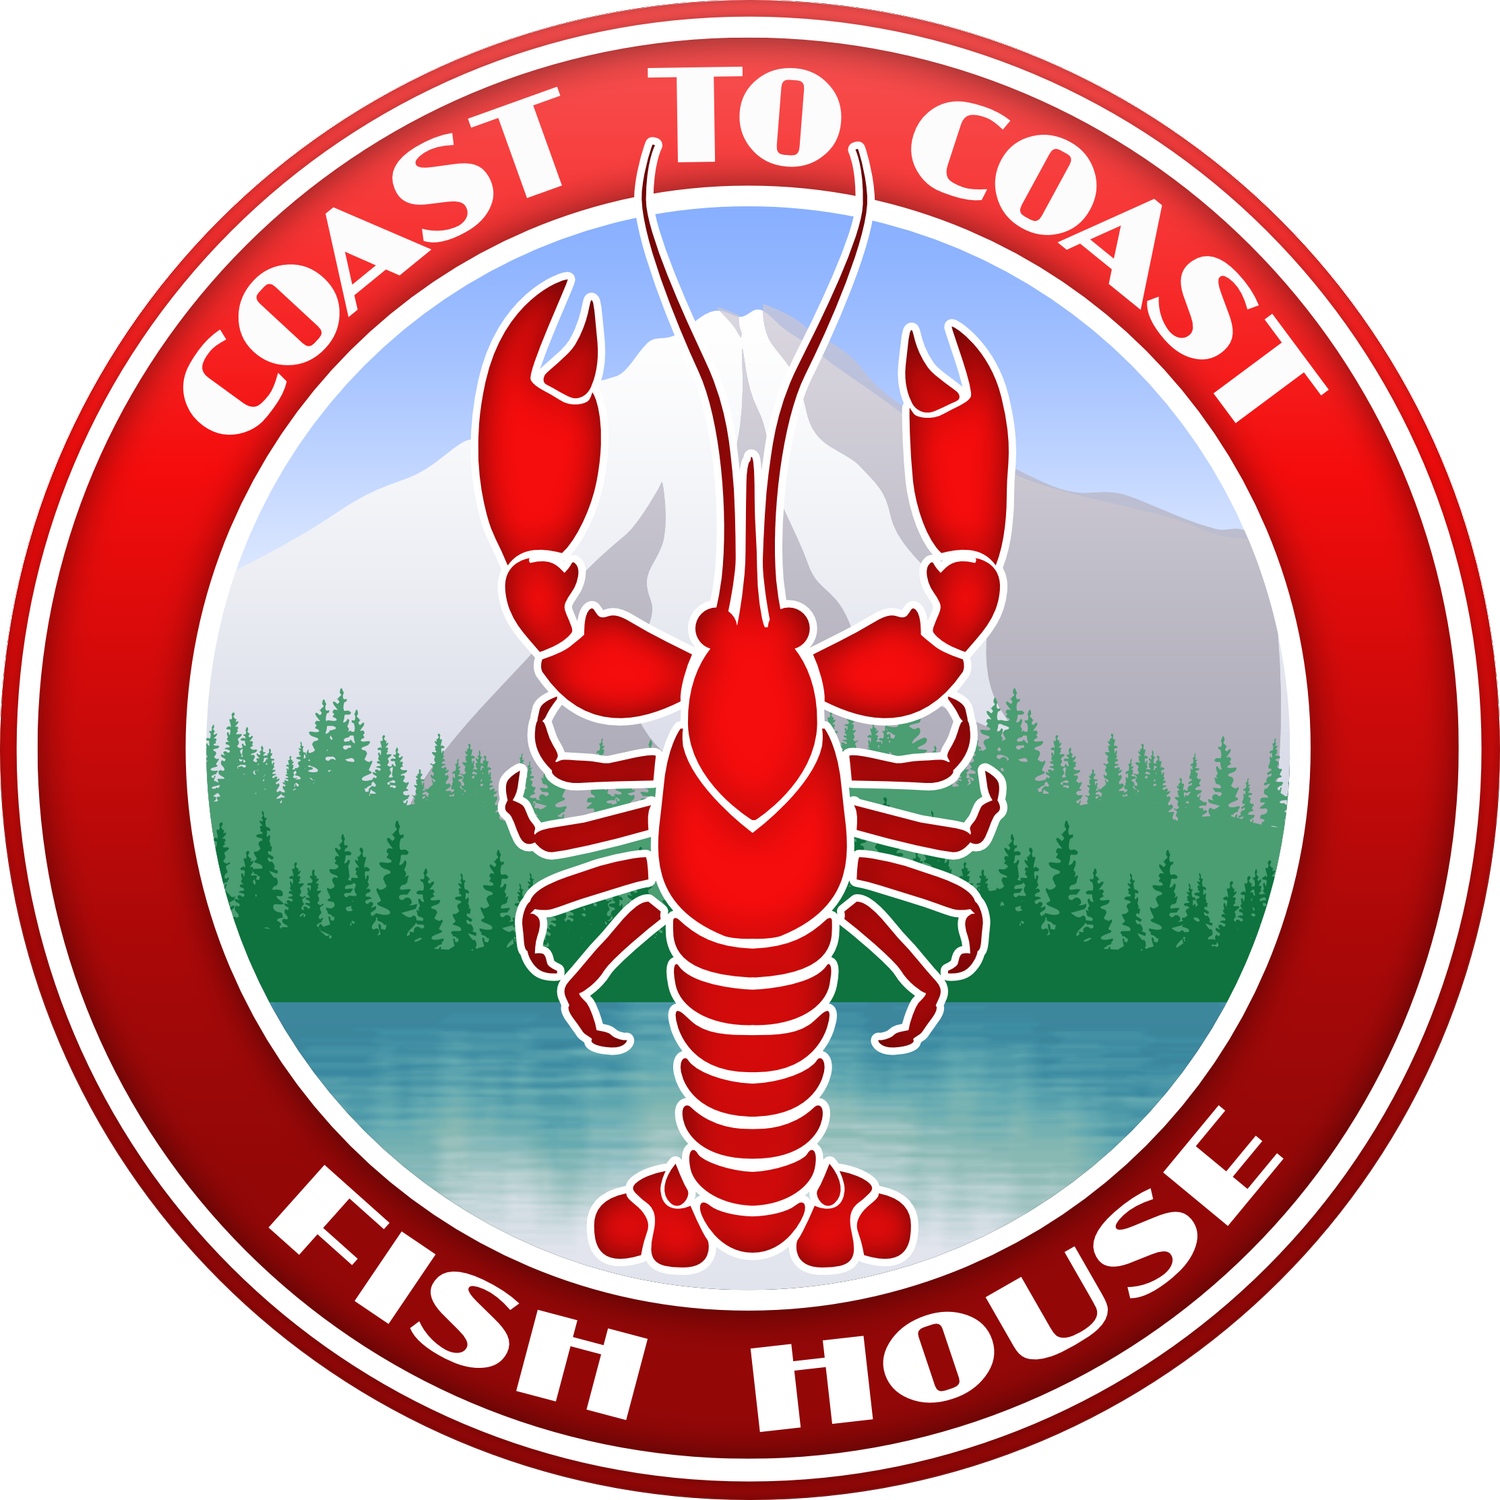 Coast to Coast Fish House